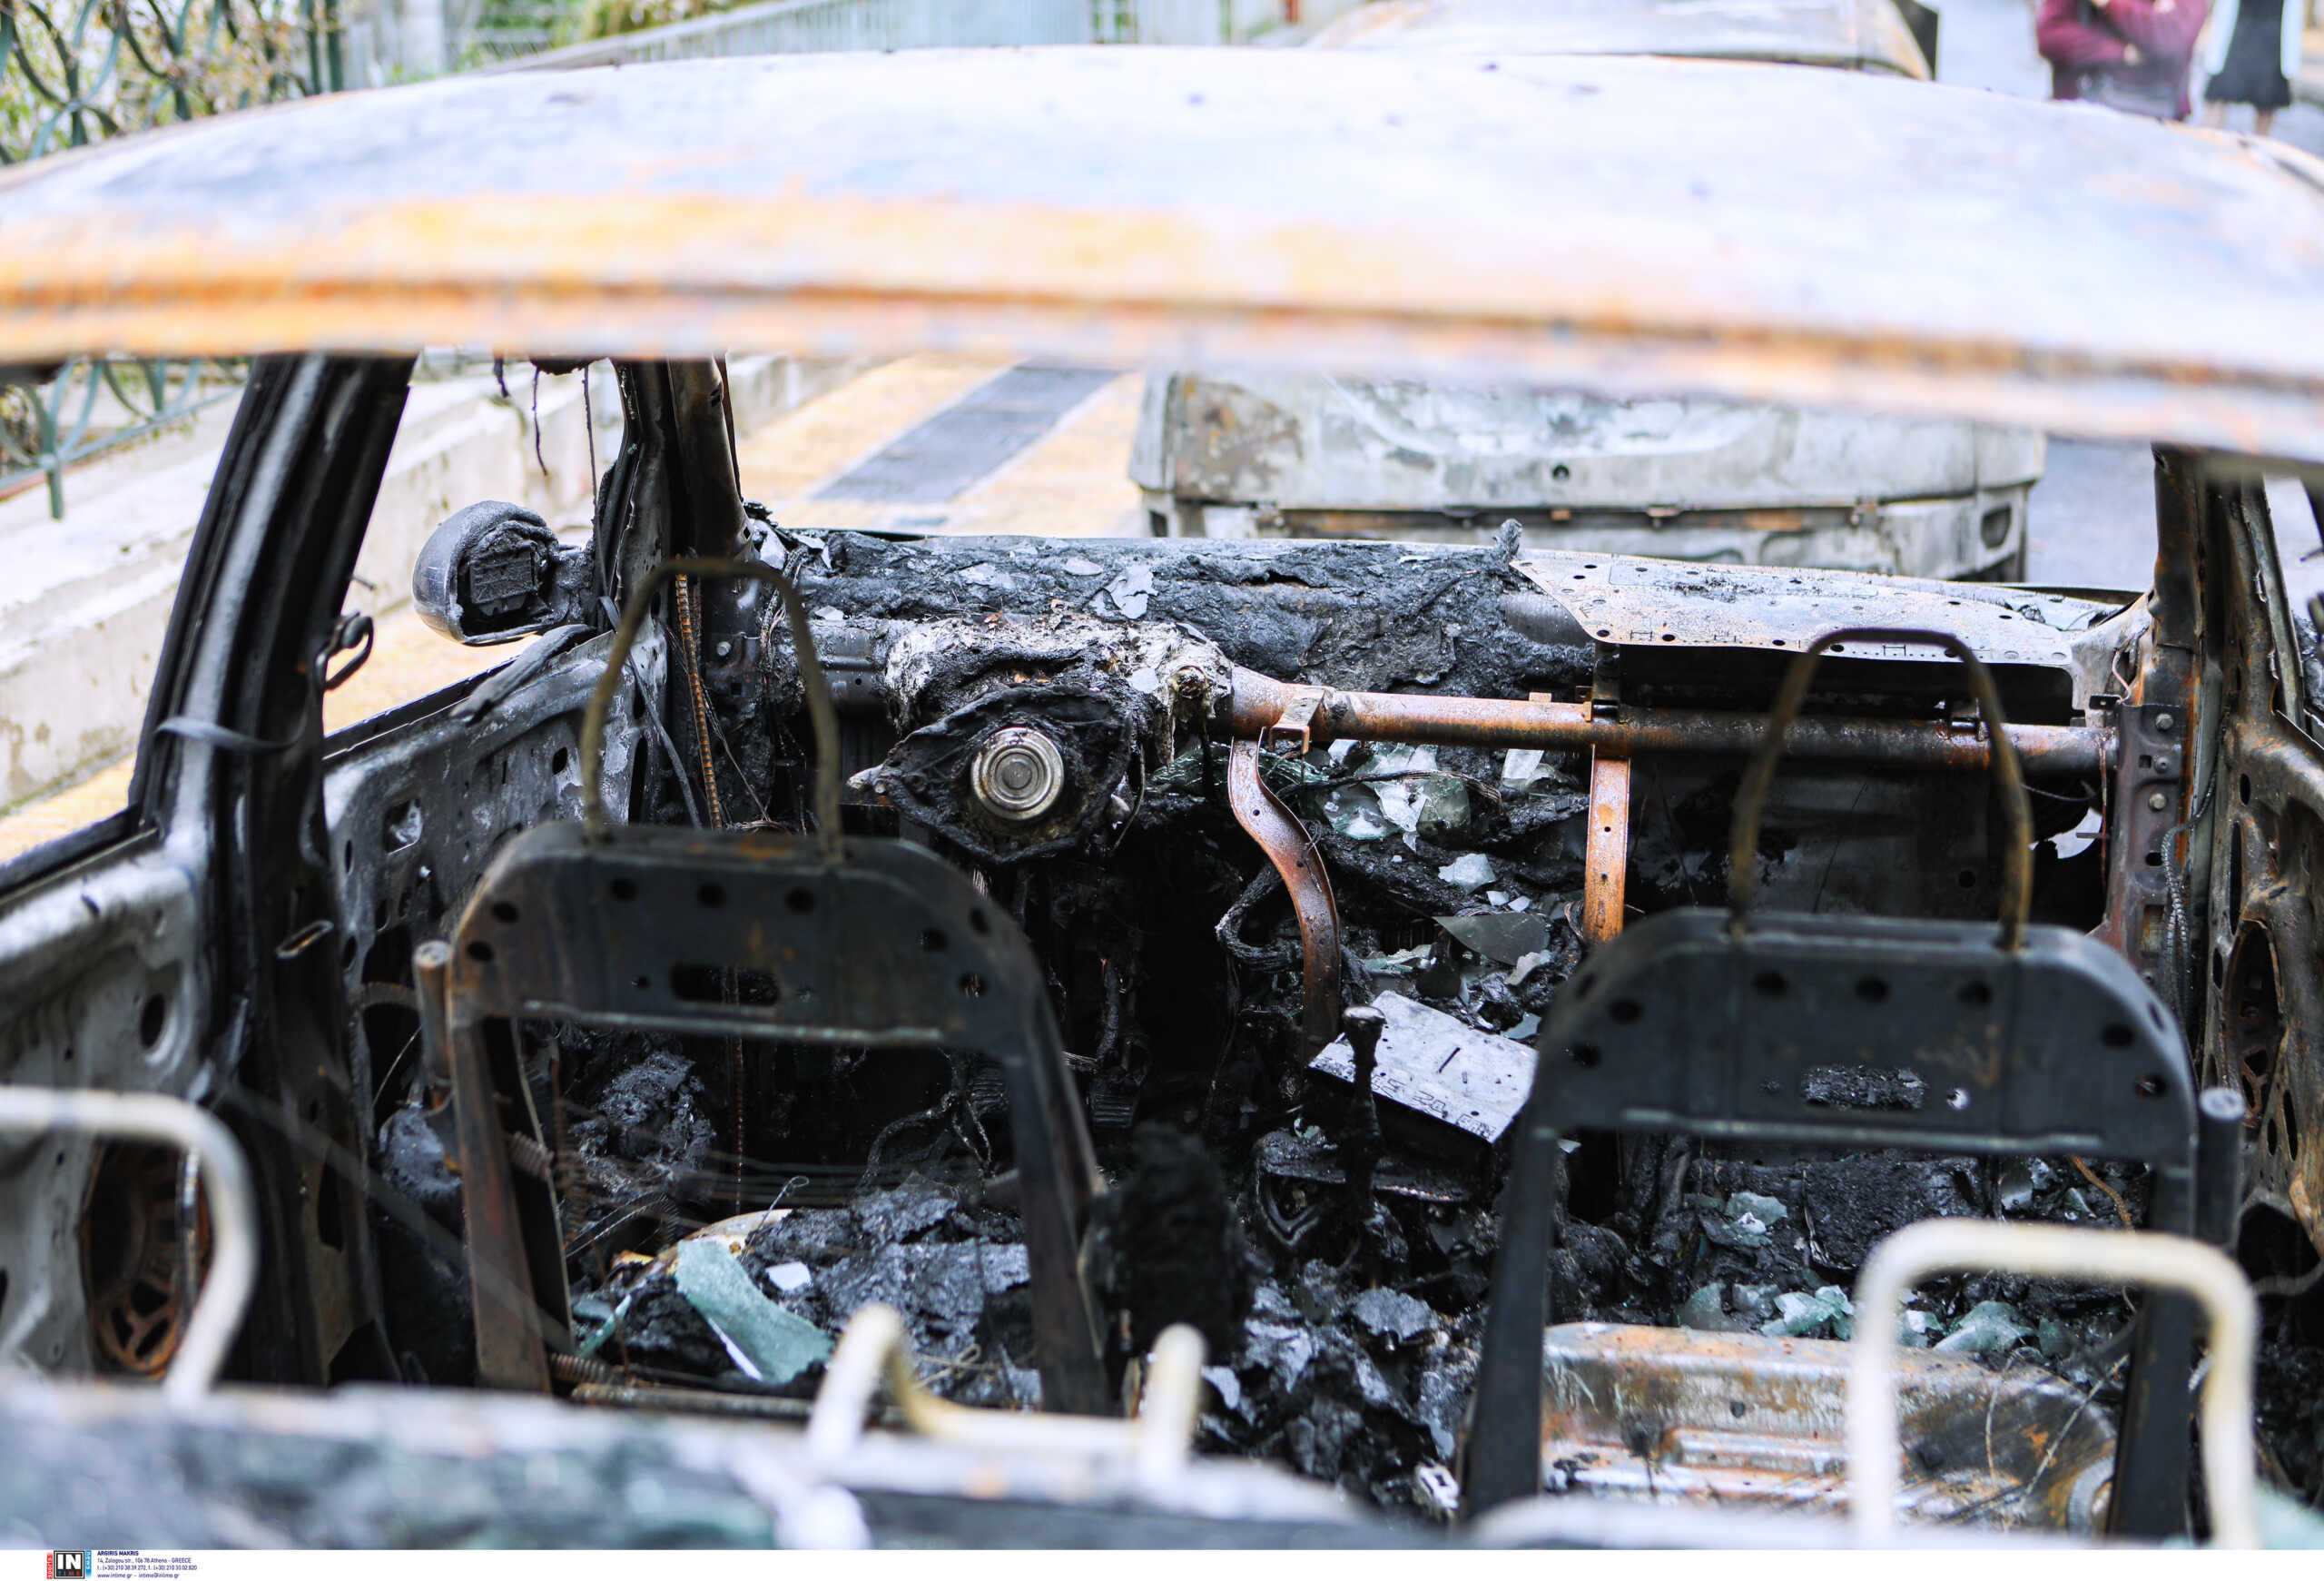 Λέσβος: Απανθρακώθηκε οδηγός από φωτιά στο αυτοκίνητό του – 17χρονος τραυματίας στο ίδιο τροχαίο